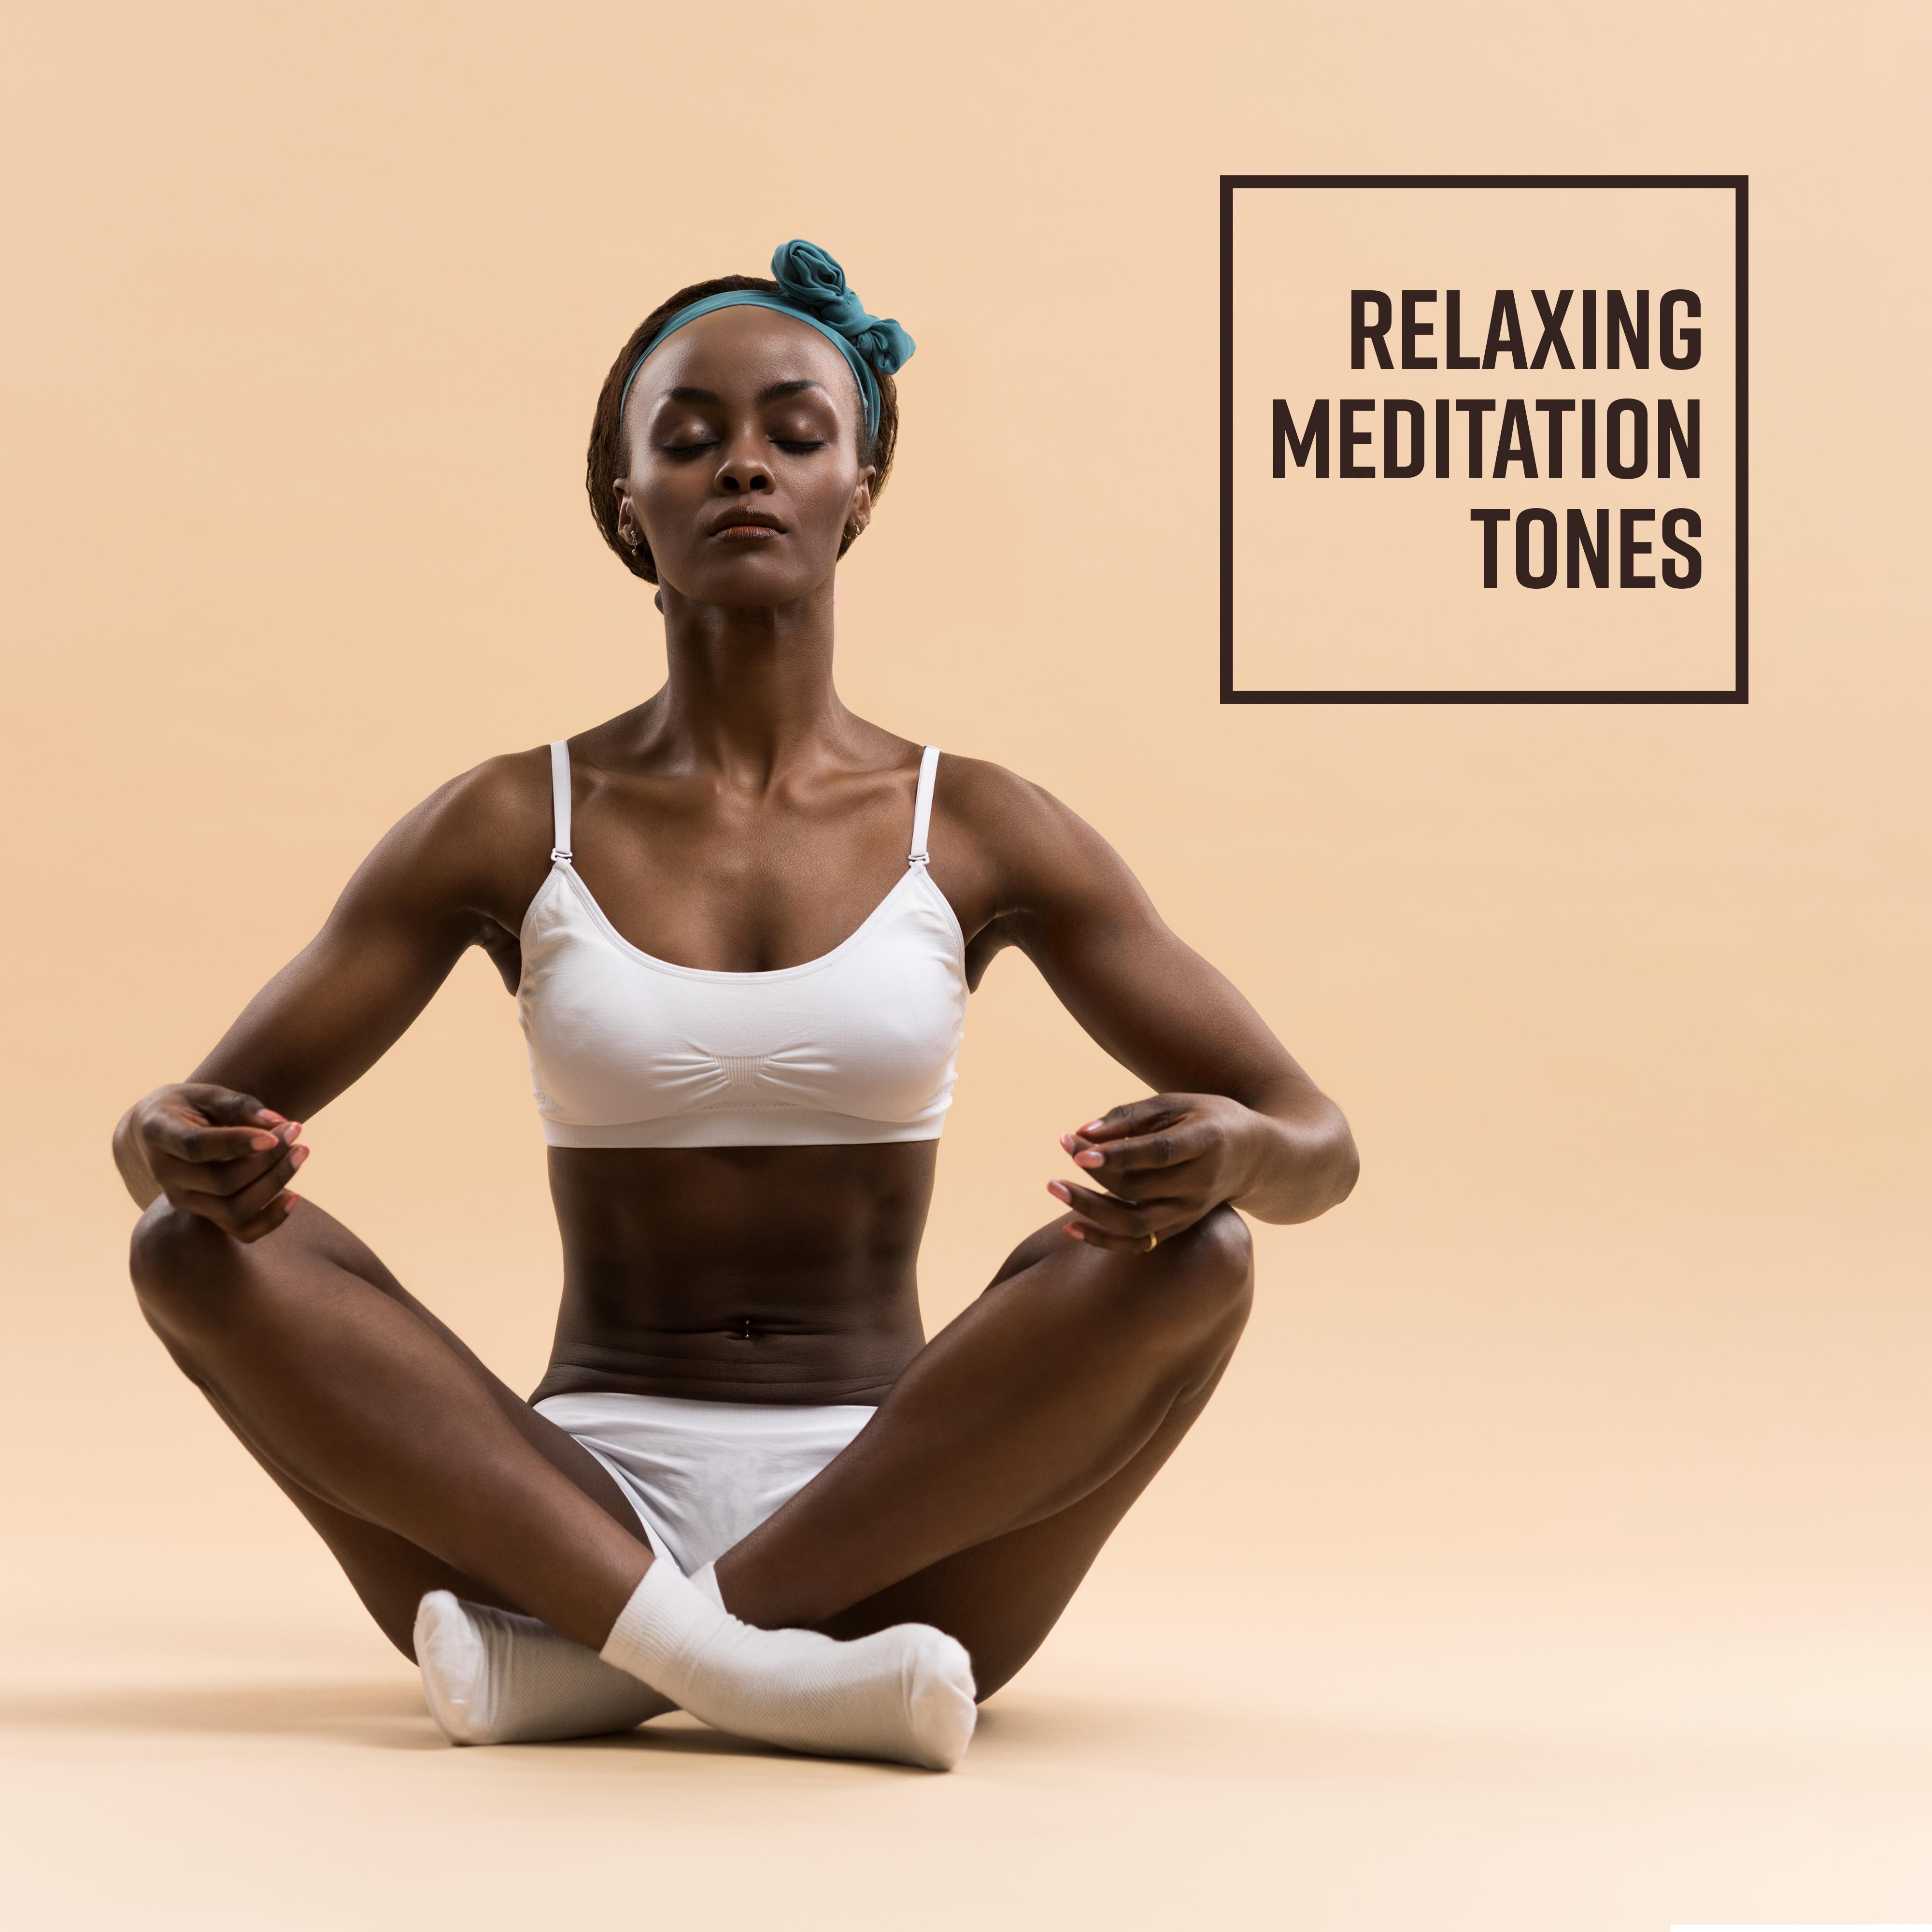 Relaxing Meditation Tones: Yoga Music for Relaxation, Sleep, Zen, Reiki, Nature Sounds for Deep Meditation, Inner Focus, Spiritual Awakening